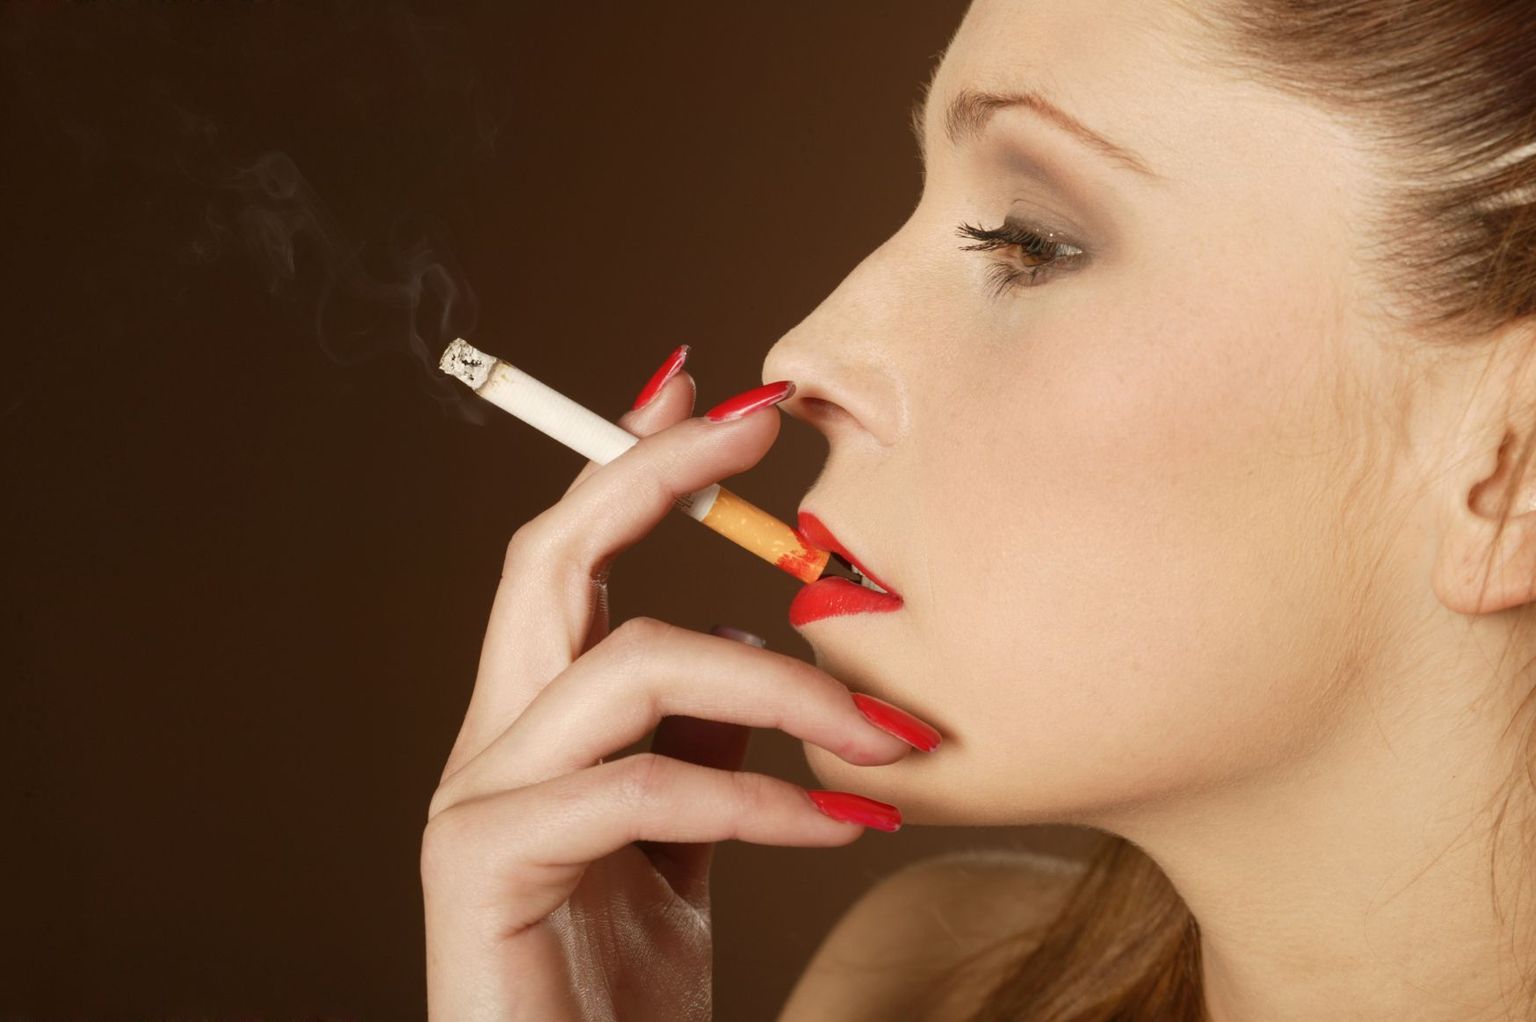 Raseduse ajal suitsetamine võib rikkuda lapse tervise aastateks